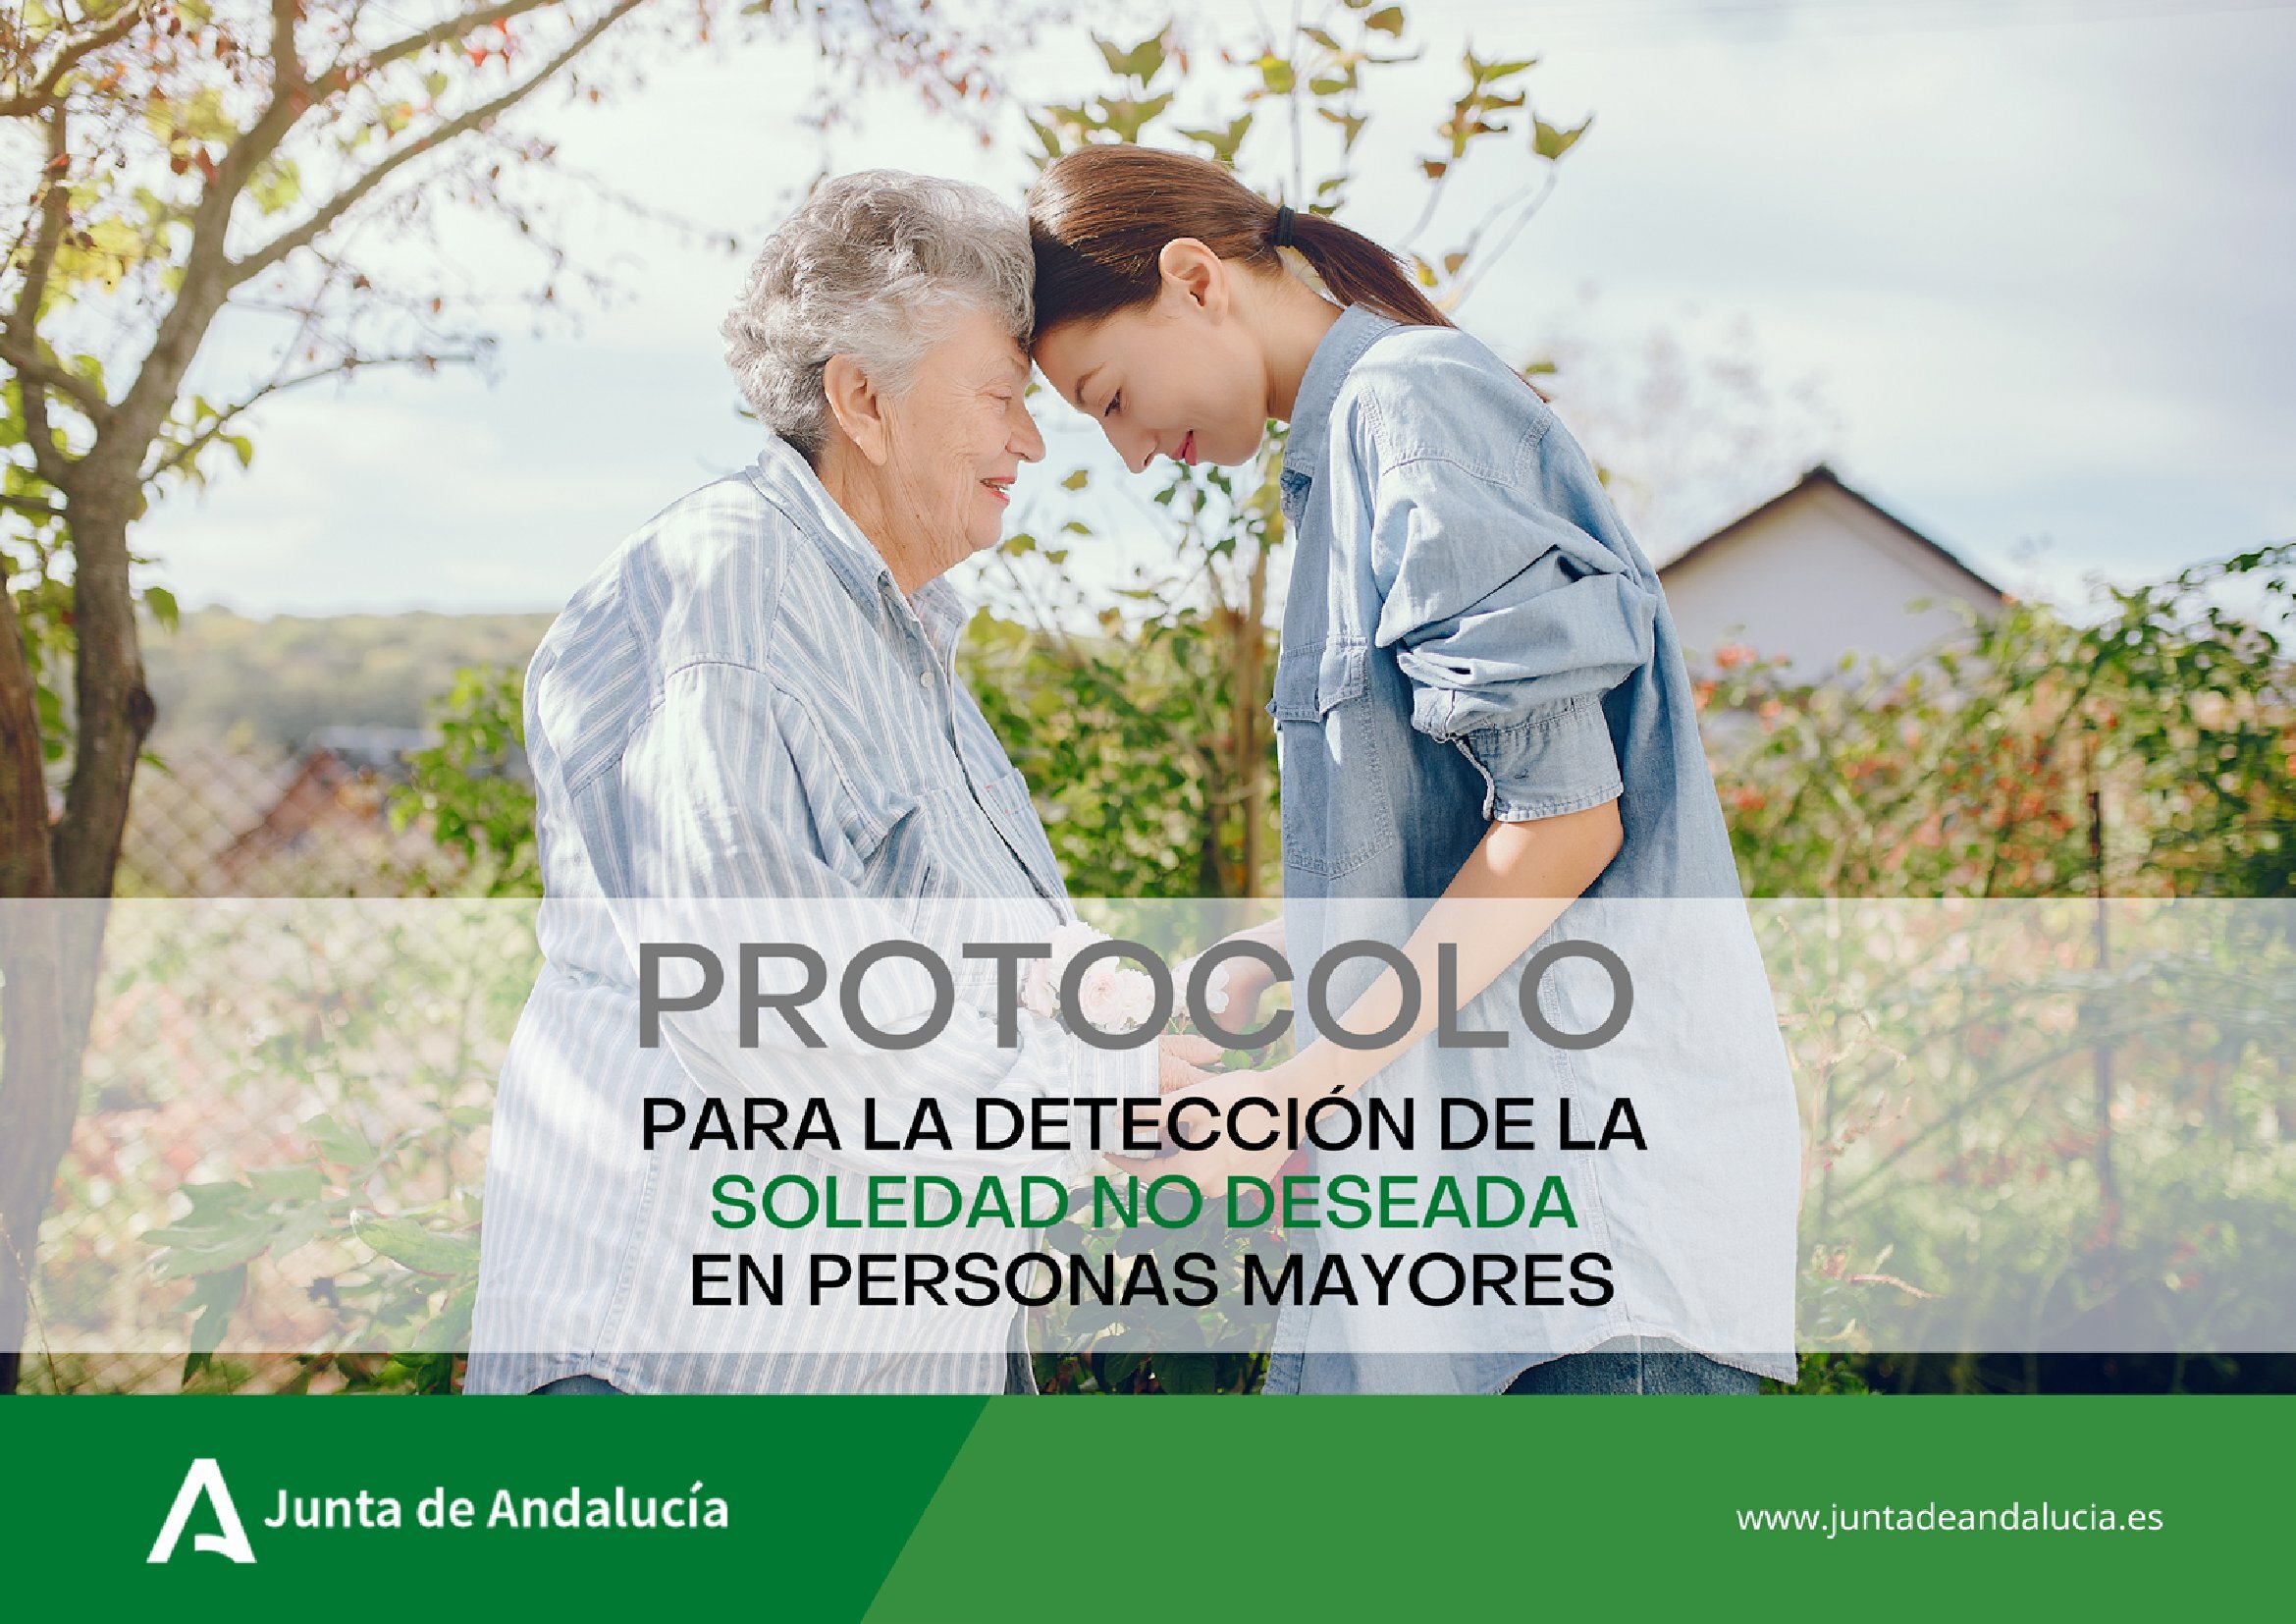 Protocolo para la Detección de la Soledad no Deseada de la Personas Mayores en Andalucía.